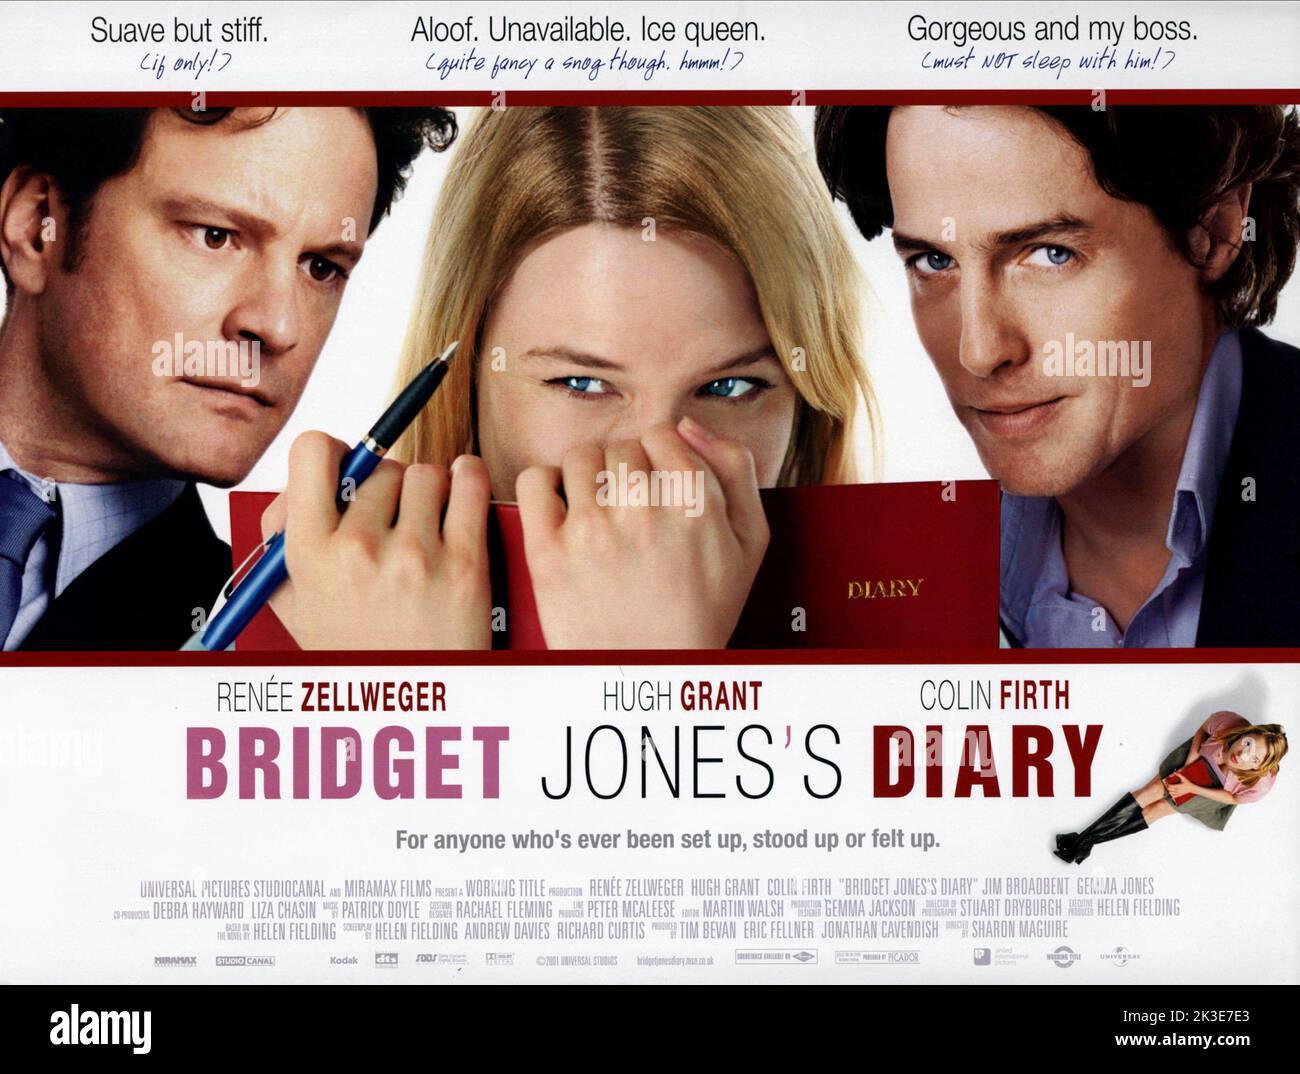 Комедия дневники. Салли Филлипс дневник Бриджит Джонс. Colin Firth in Bridget Jones’s Diary. Бриджет Грэм пиксели.